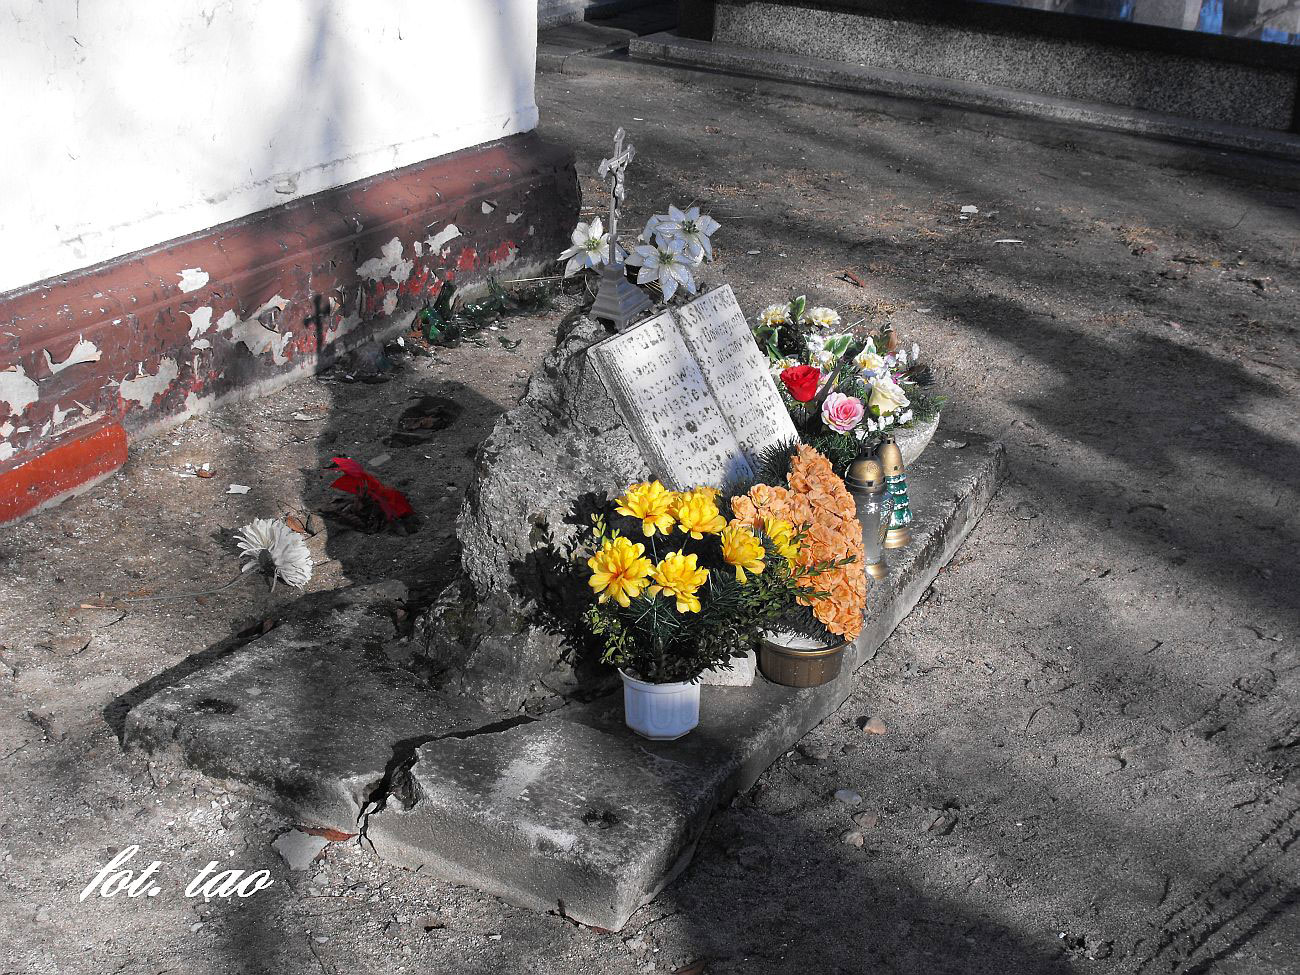 ladami interwencji Pawa Gsiorowskiego w sprawie ratowania zabytkowych nagrobkw na Sierpeckim cmentarzu. Drogi panie Pawle jak wida zrobiono w tej sprawie bardzo 